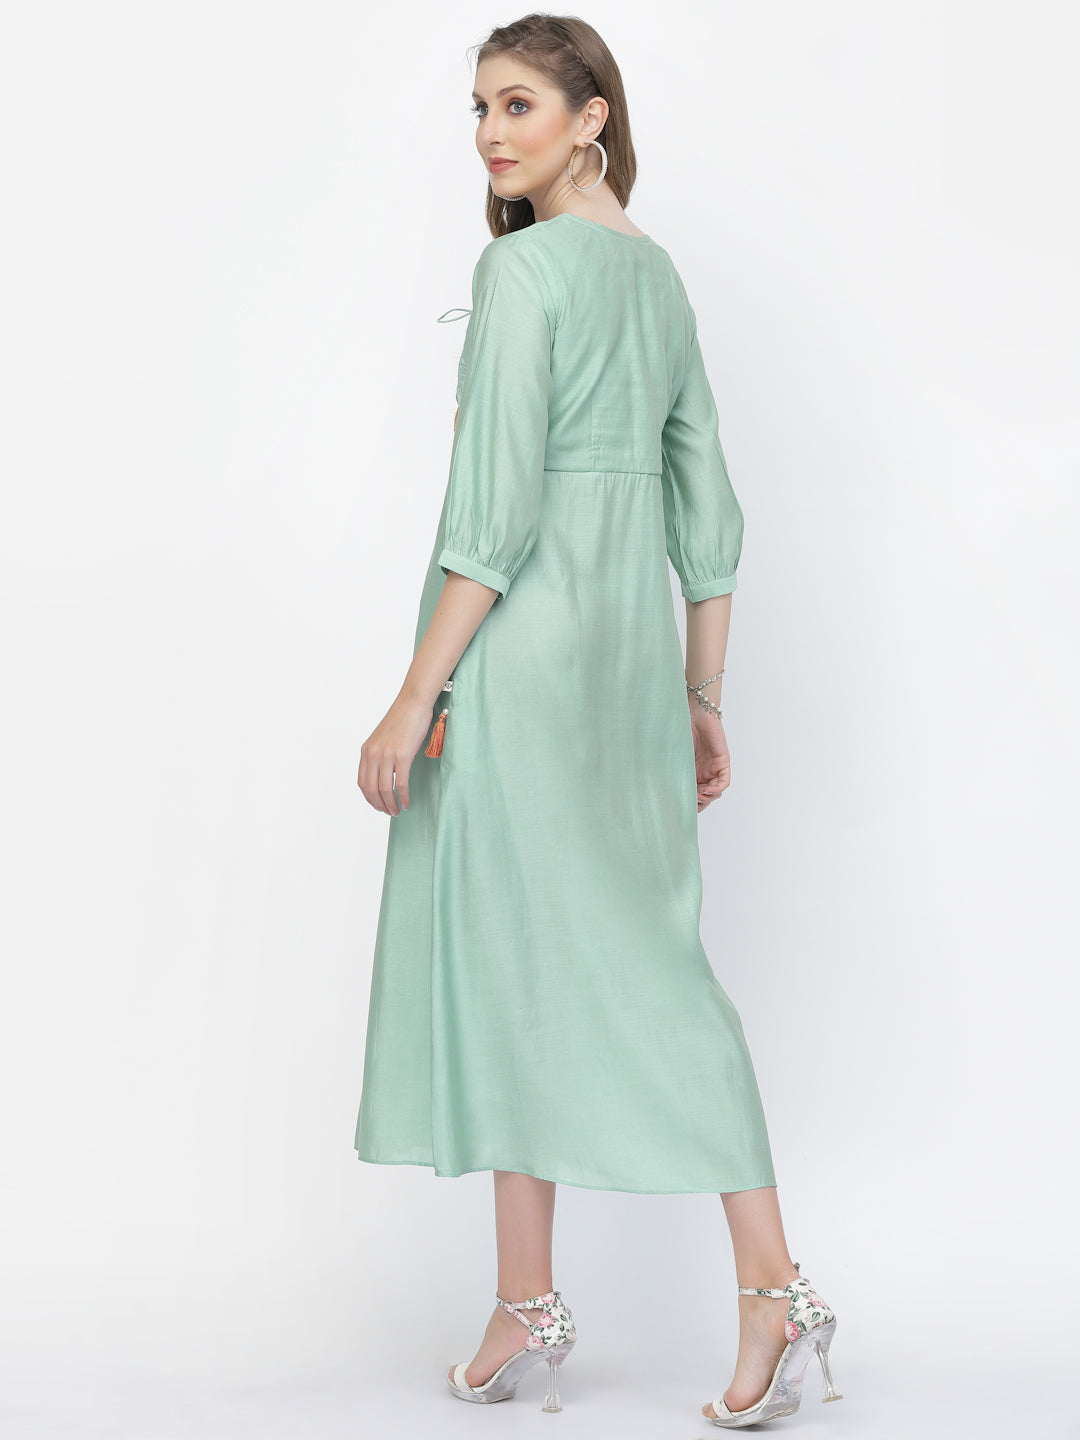 Sea Mist Chanderi Silk Embroidered Summer Dress - ARH1372